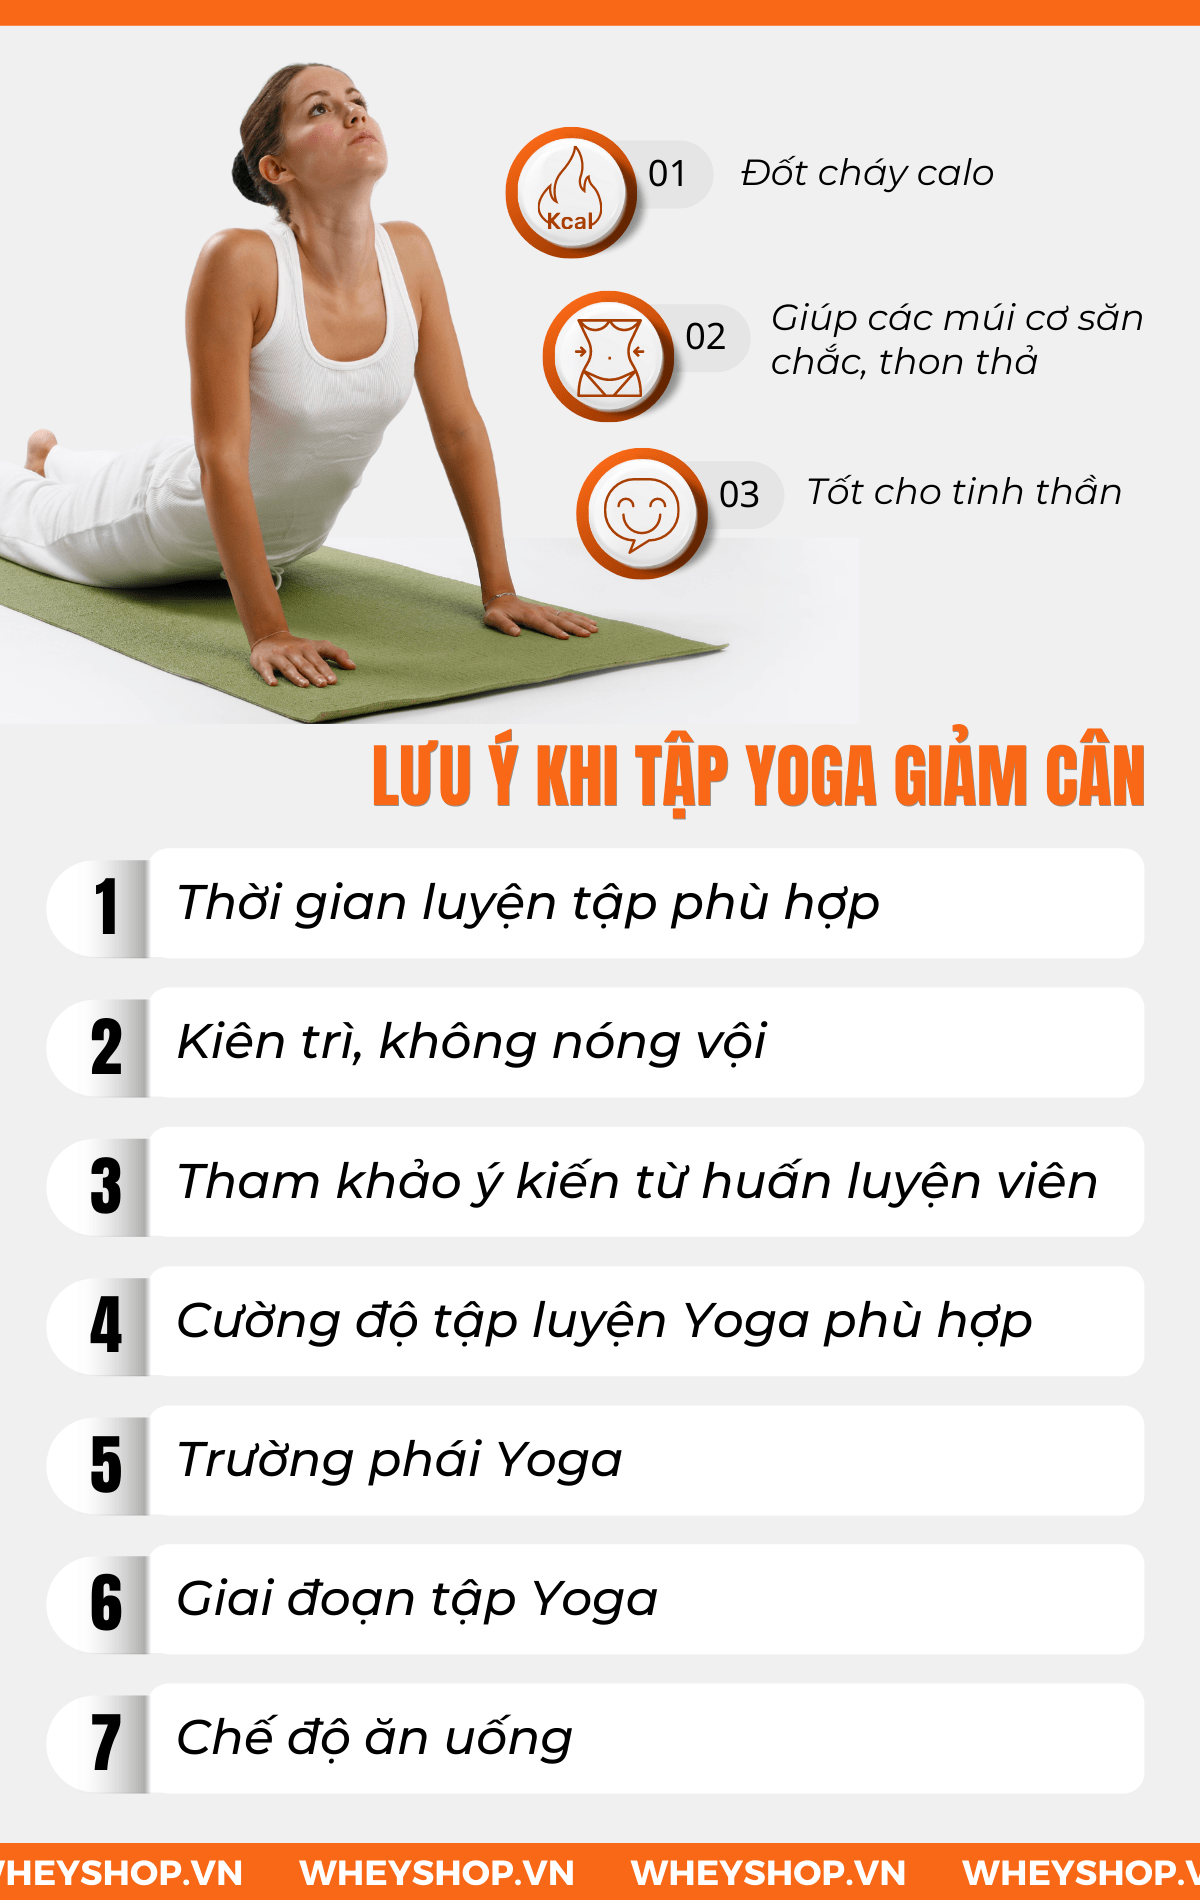 Tập yoga có giảm cân không là một câu hỏi được rất nhiều người quan tâm. Để có được câu trả lời cho vấn đề này, mời bạn tham khảo bài viết sau đây để biết...